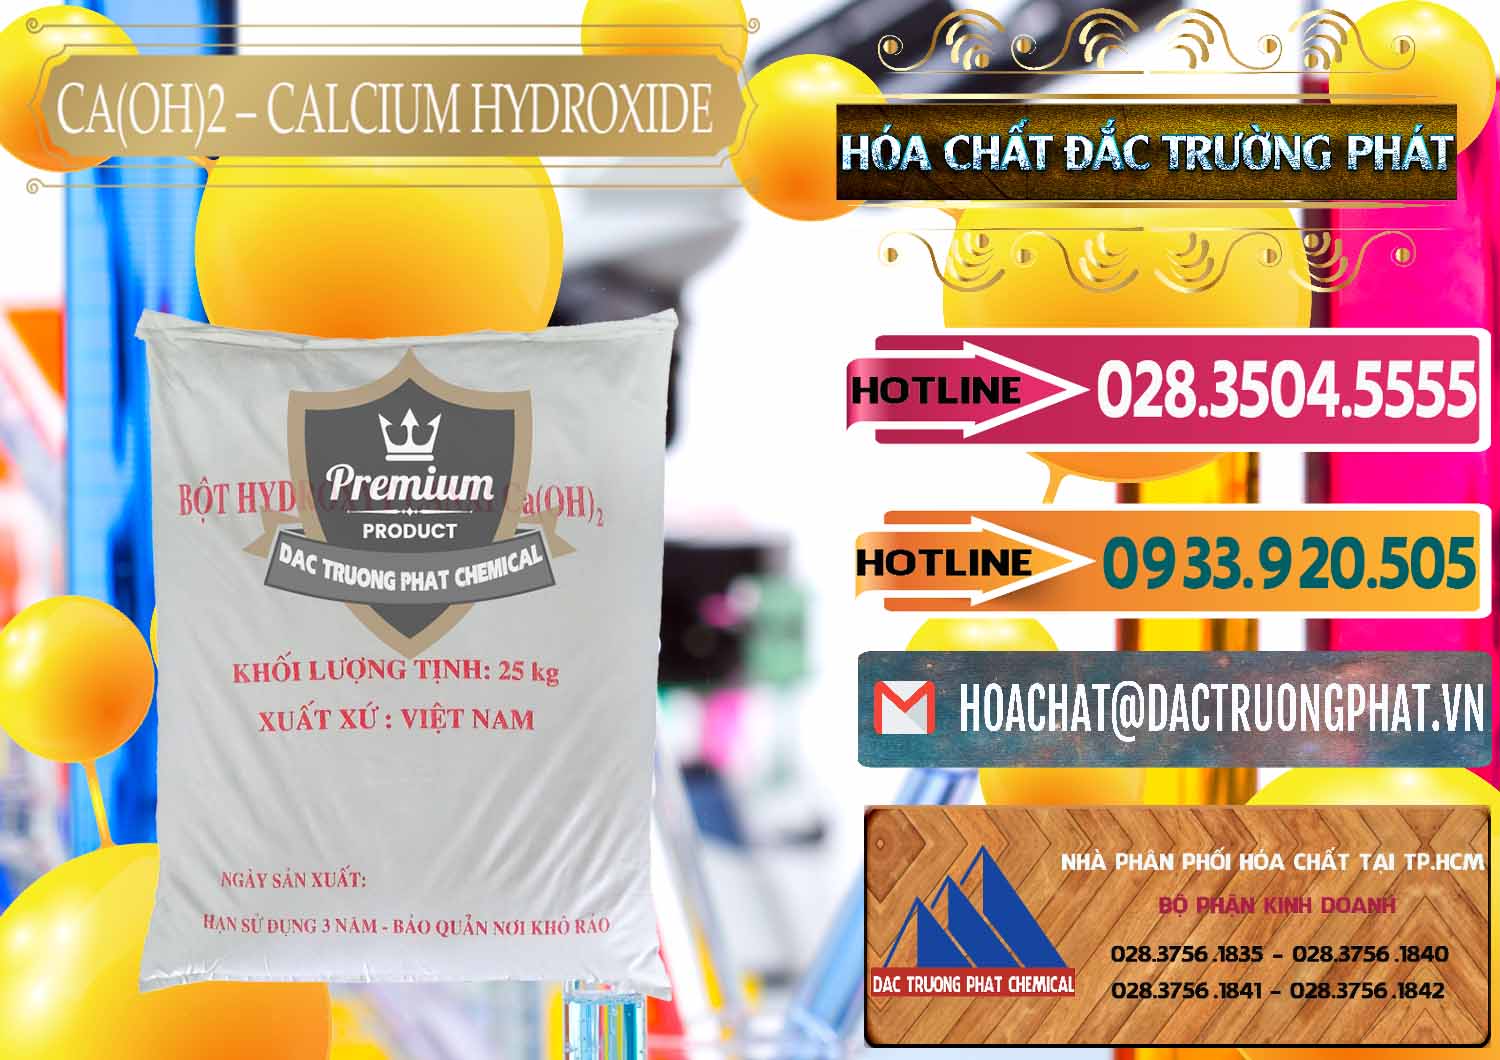 Bán và cung ứng Ca(OH)2 - Calcium Hydroxide Việt Nam - 0186 - Cty chuyên bán và cung cấp hóa chất tại TP.HCM - dactruongphat.vn